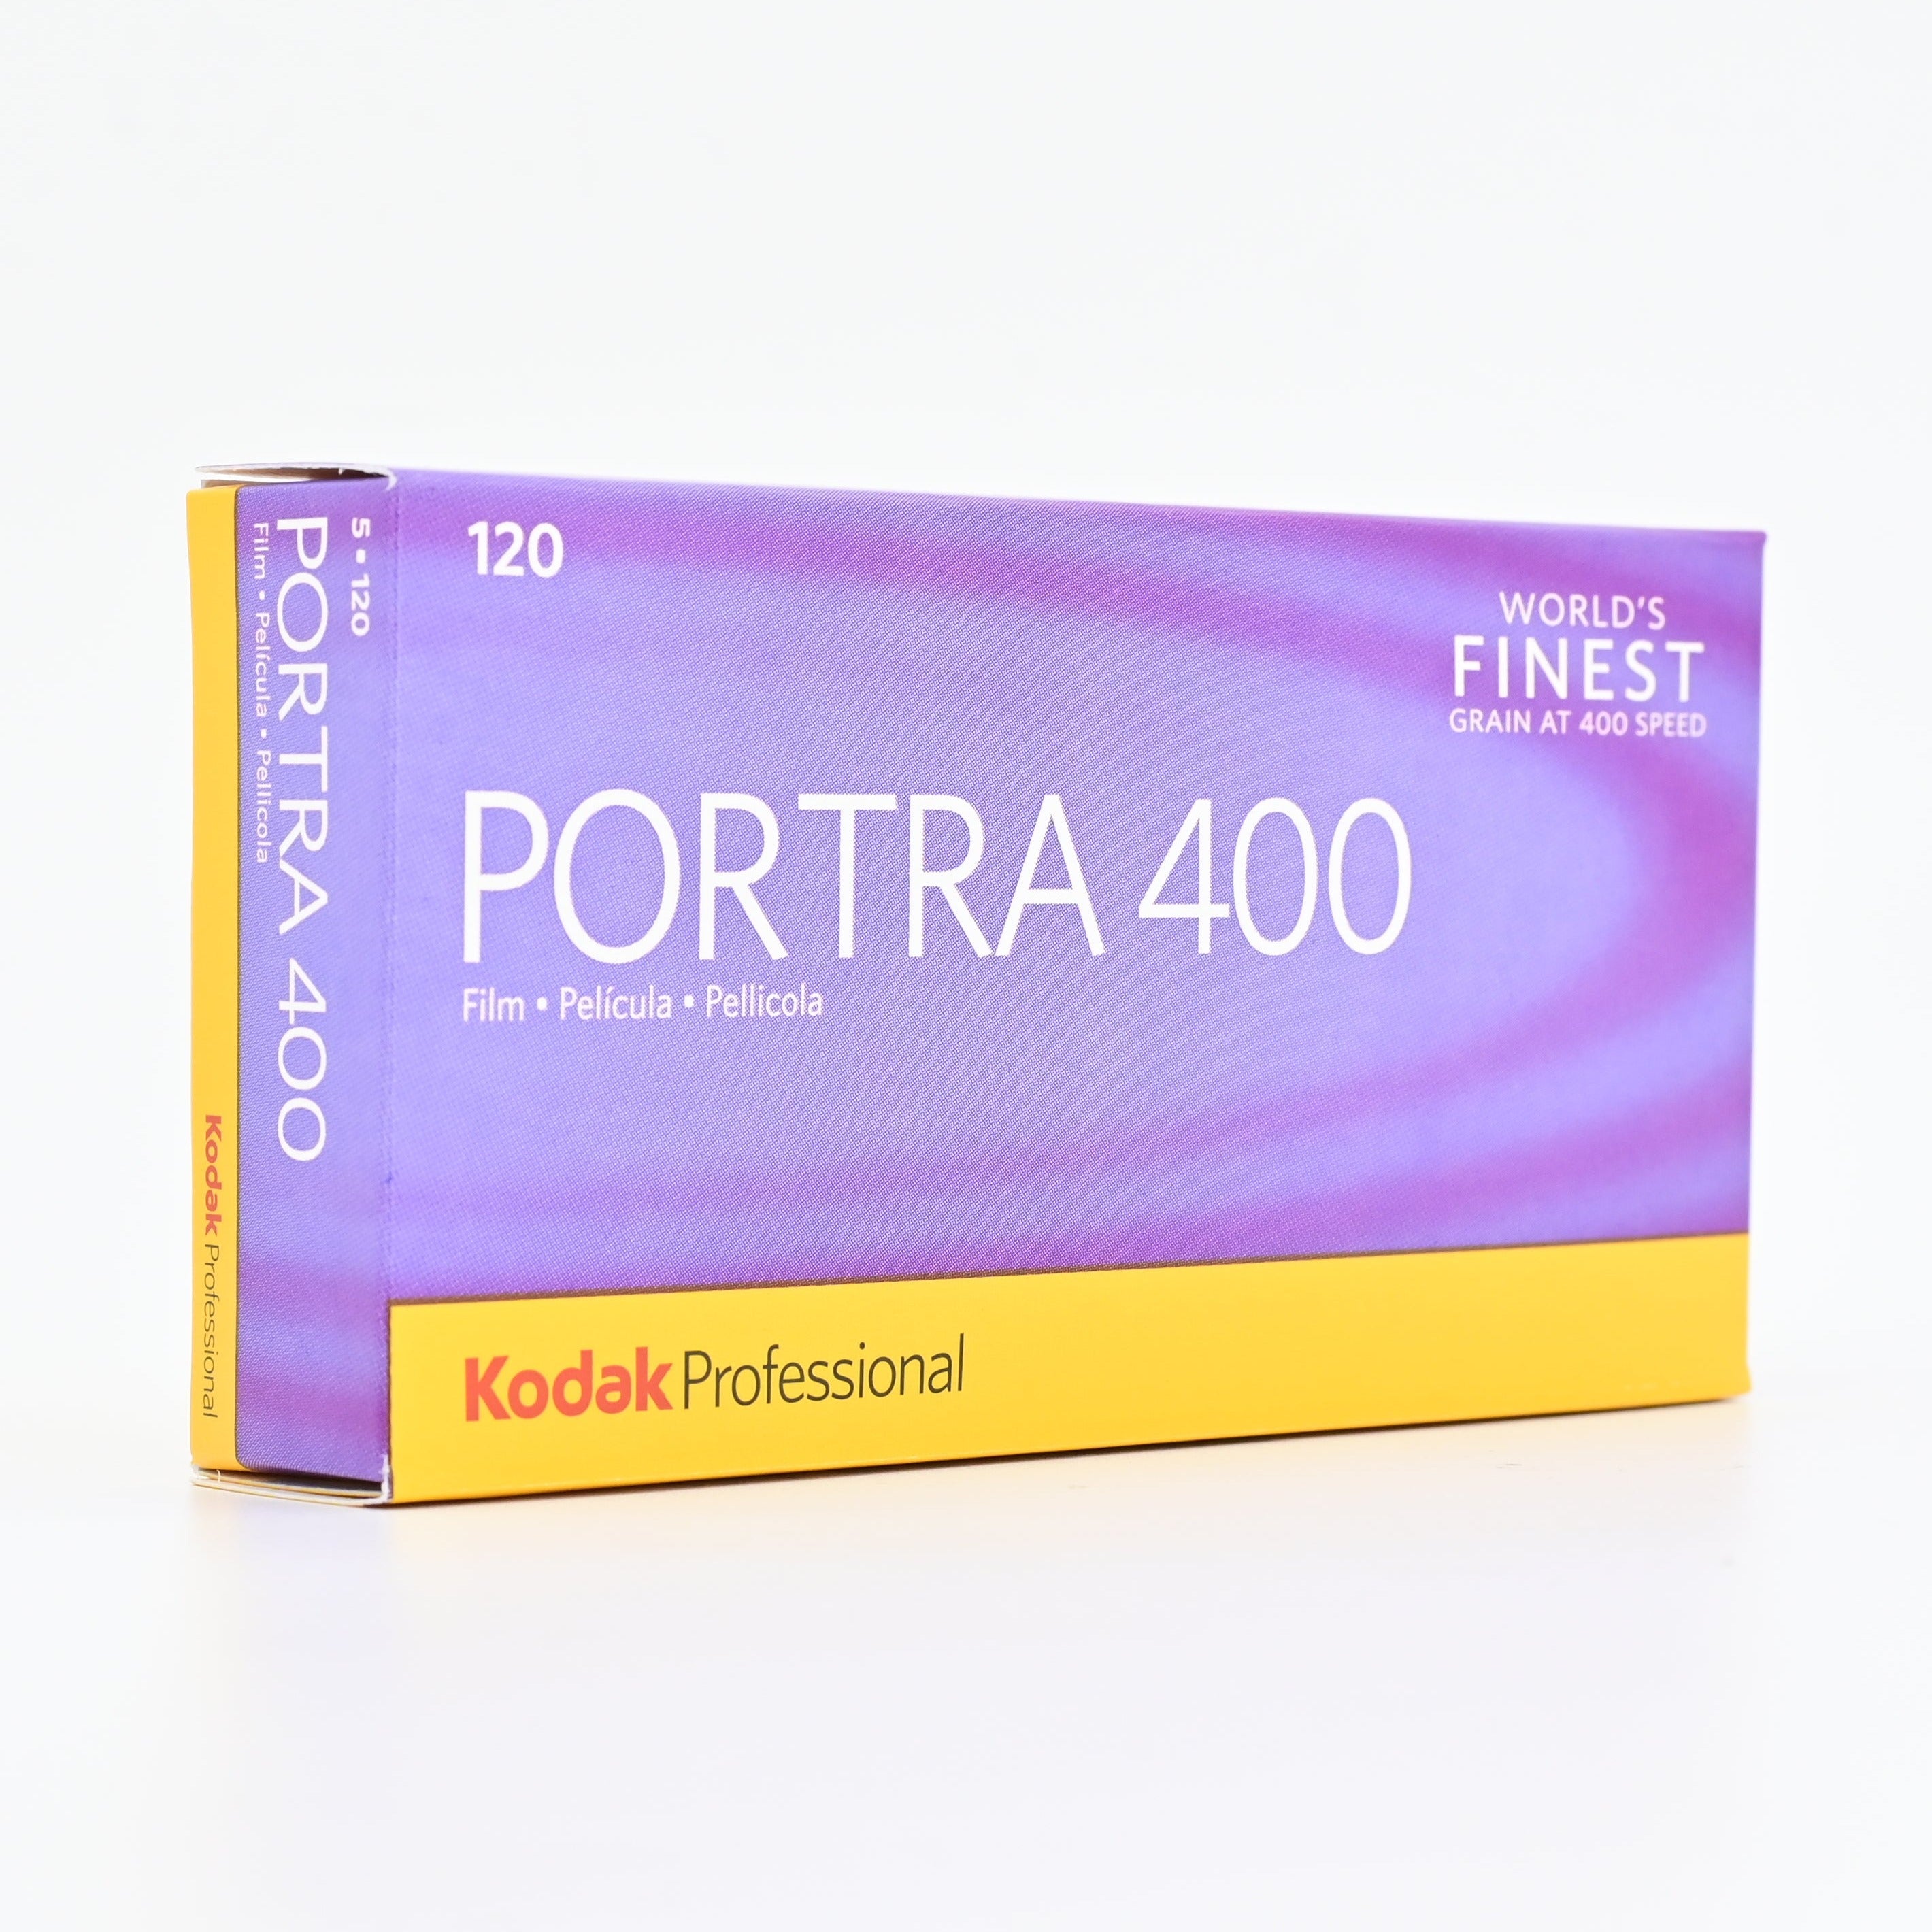 現貨] Kodak Portra 400 120 Film 熱門專業級菲林顆粒細膩人像拍攝表現